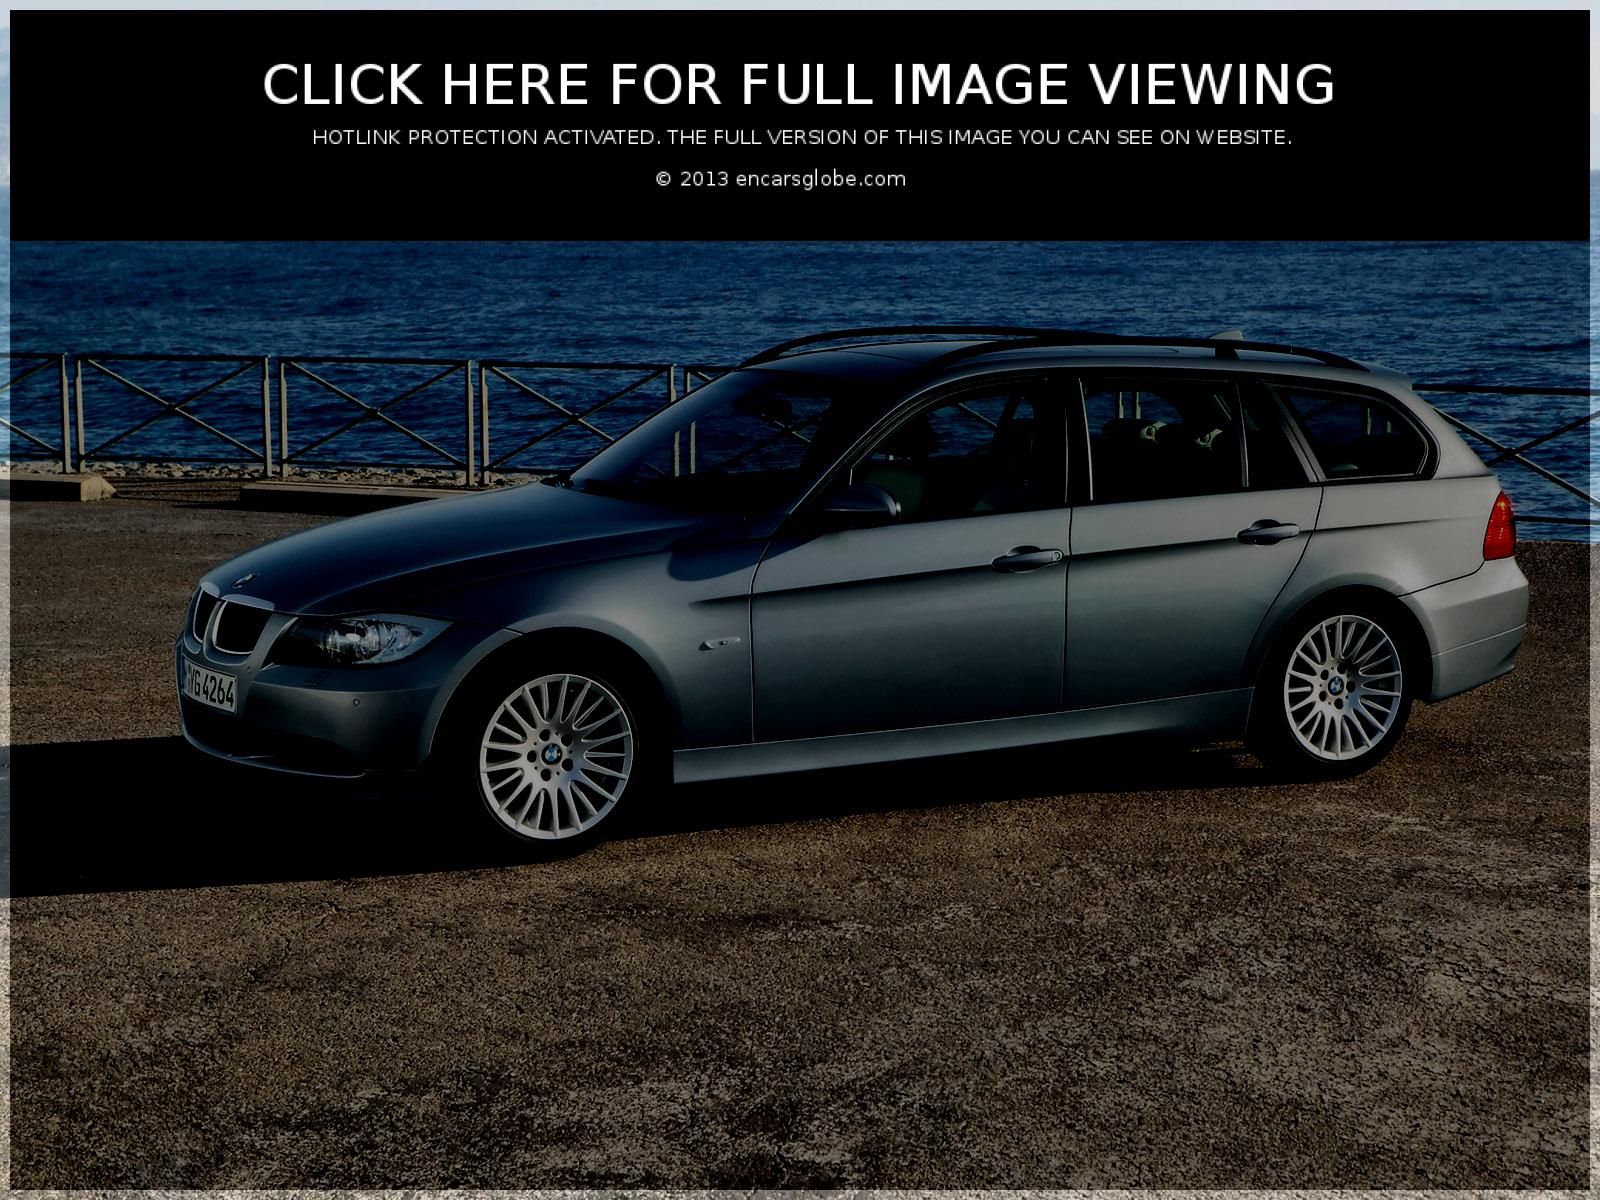 BMW 3 Sport Wagon (01 image) Size: 1600 x 1200 px | 29223 views